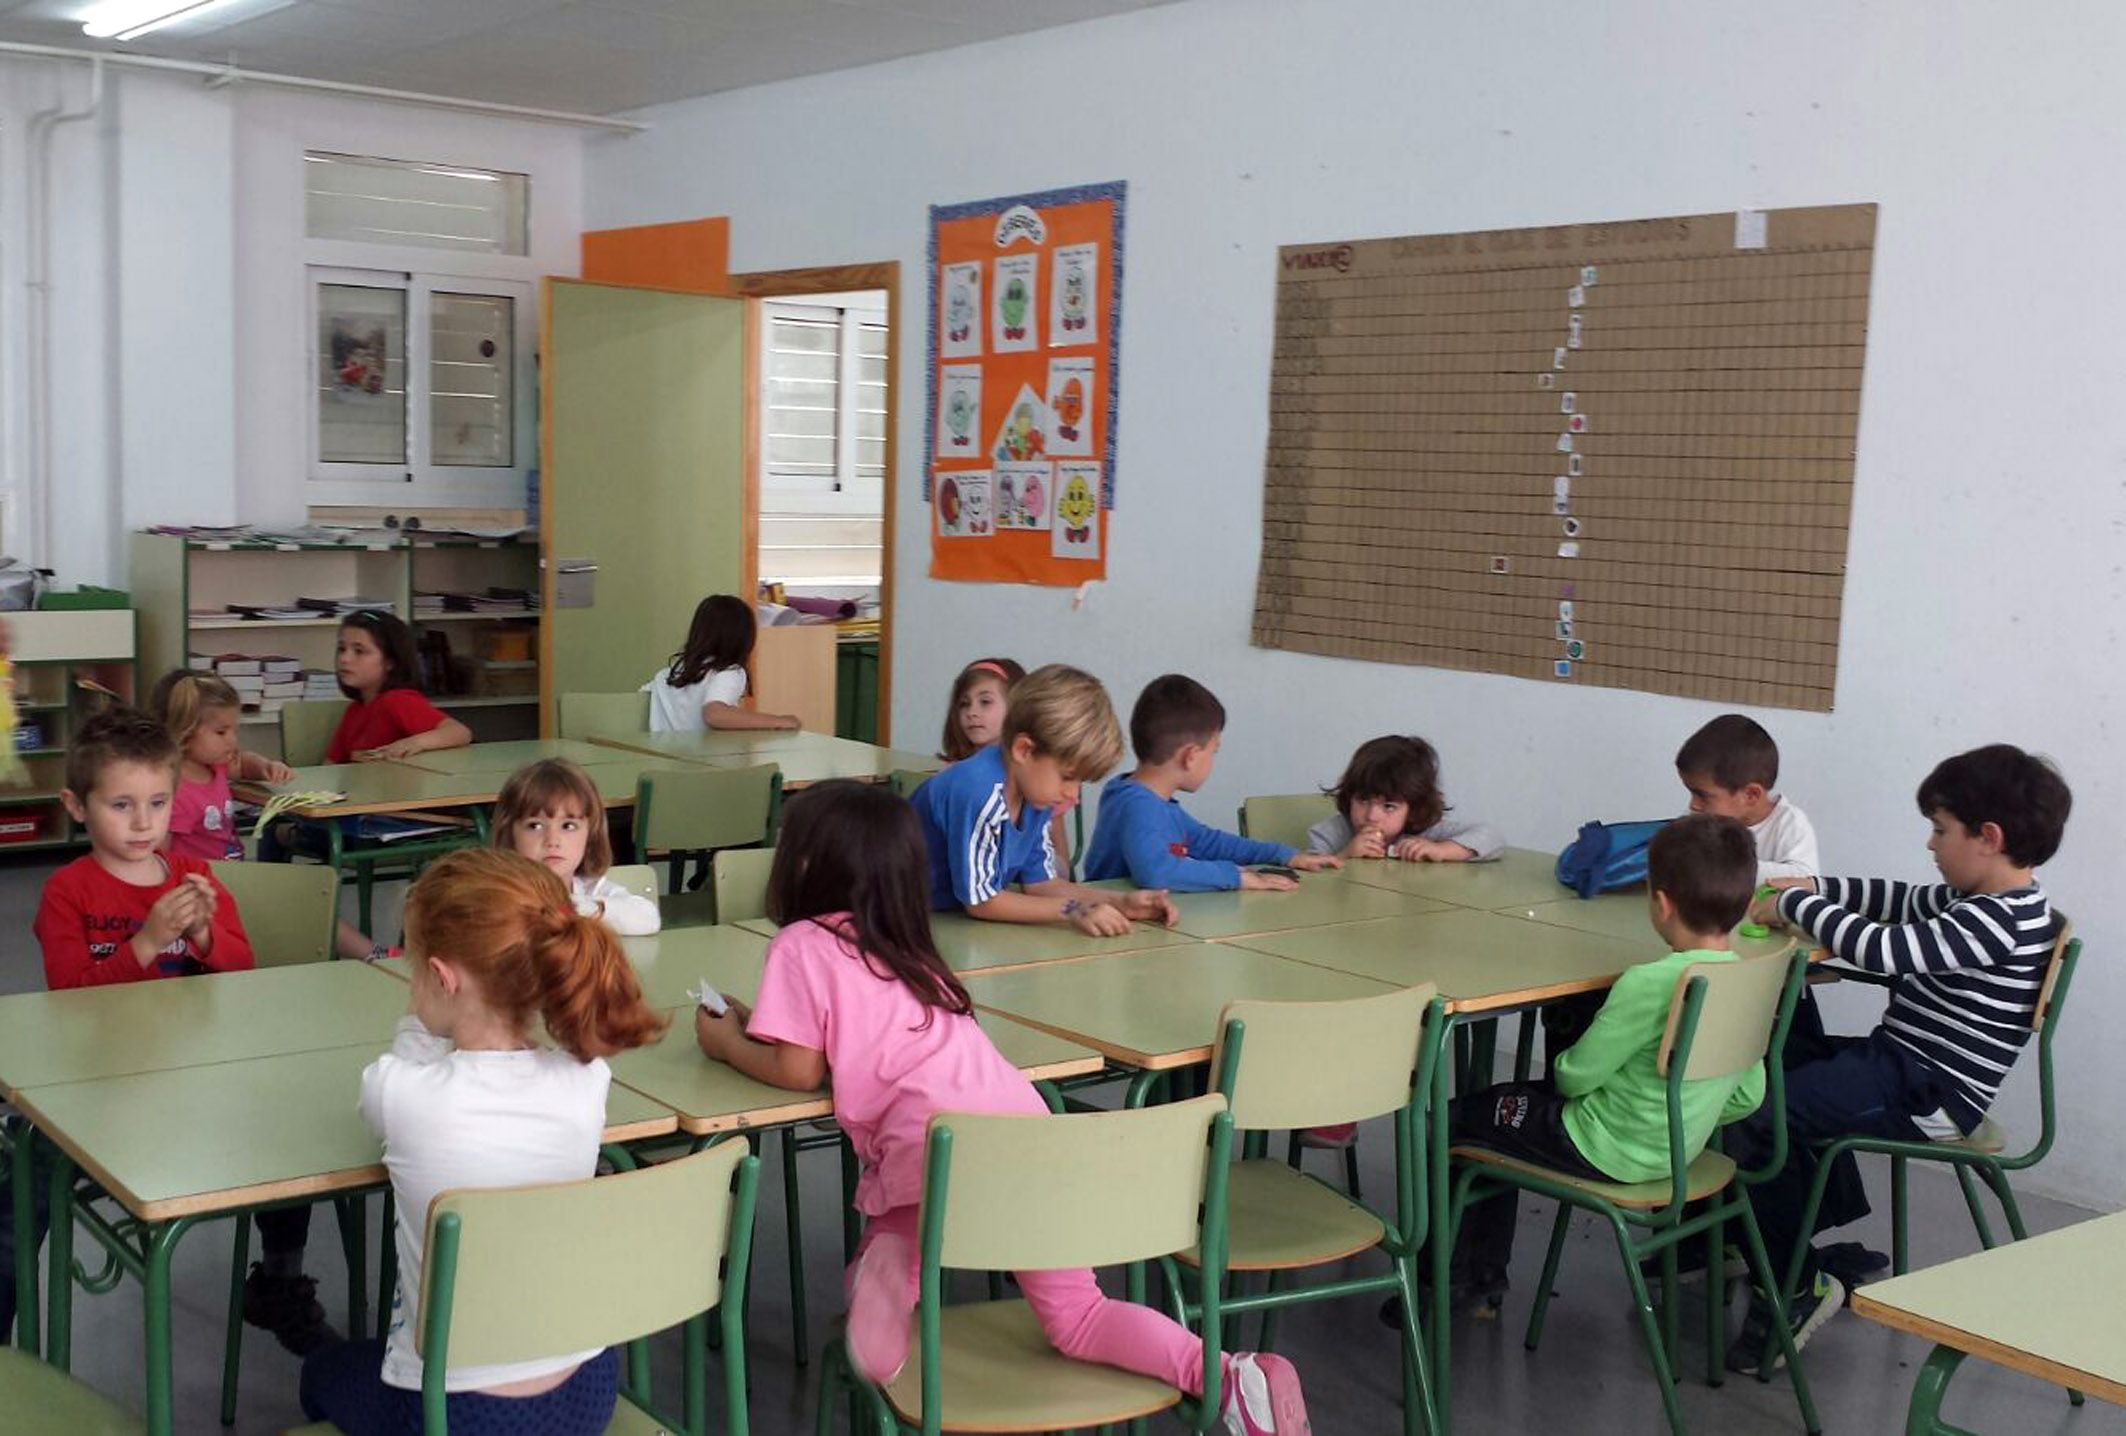 Escuela Semana Santa - Las Torres de Cotillas2